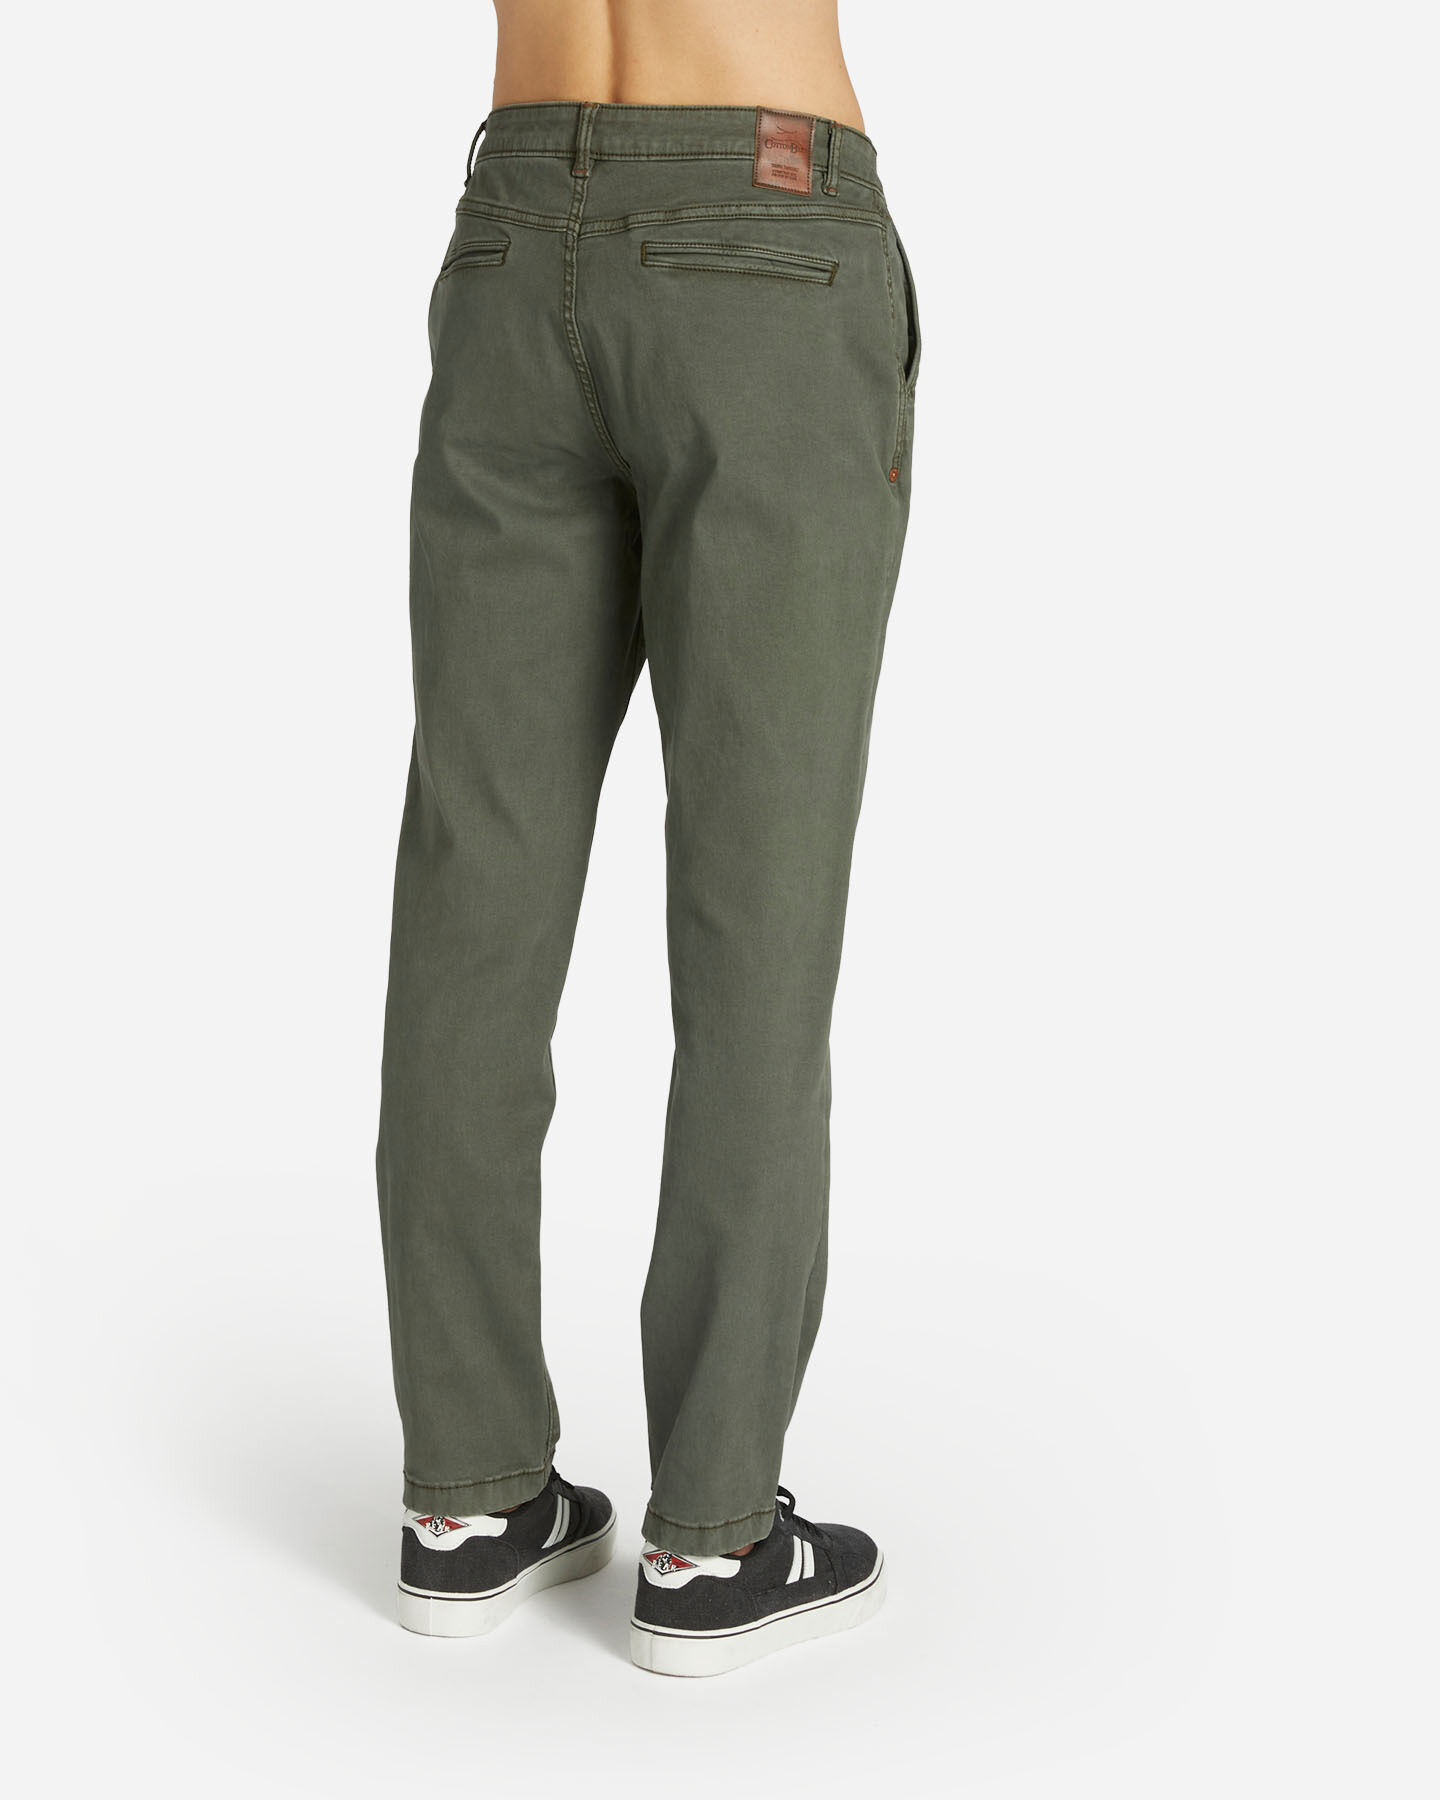  Pantalone COTTON BELT CHINO HYBRID M S4127003|043A|30 scatto 1